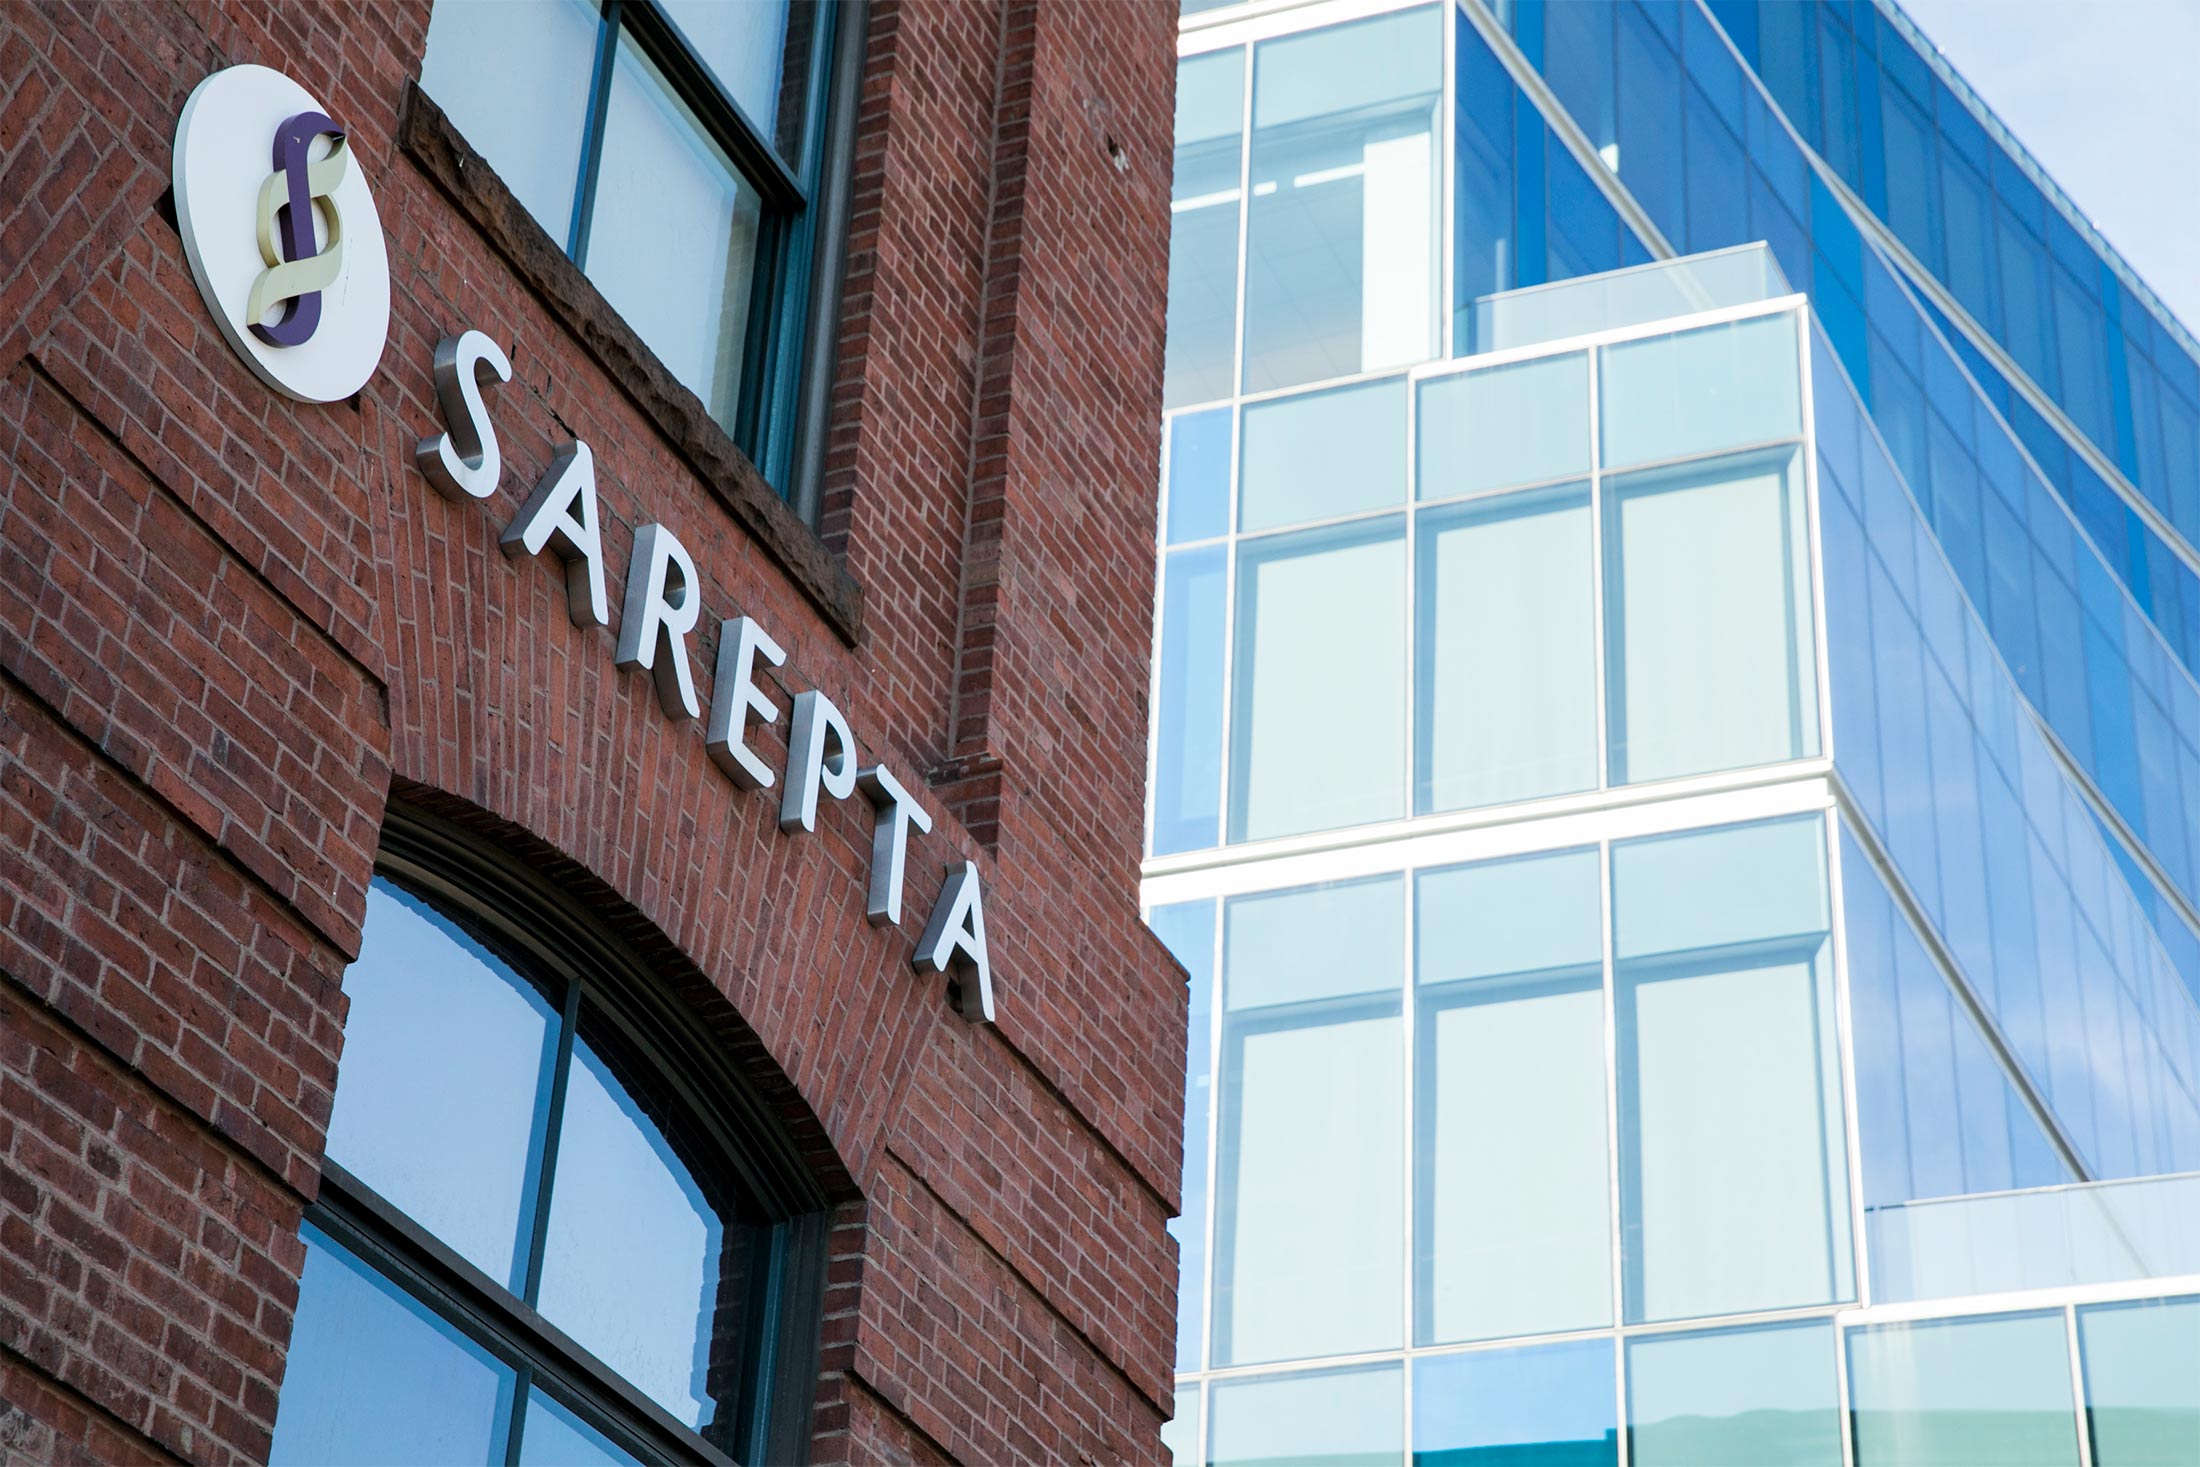 Sarepta headquarters in Cambridge, Massachusetts.